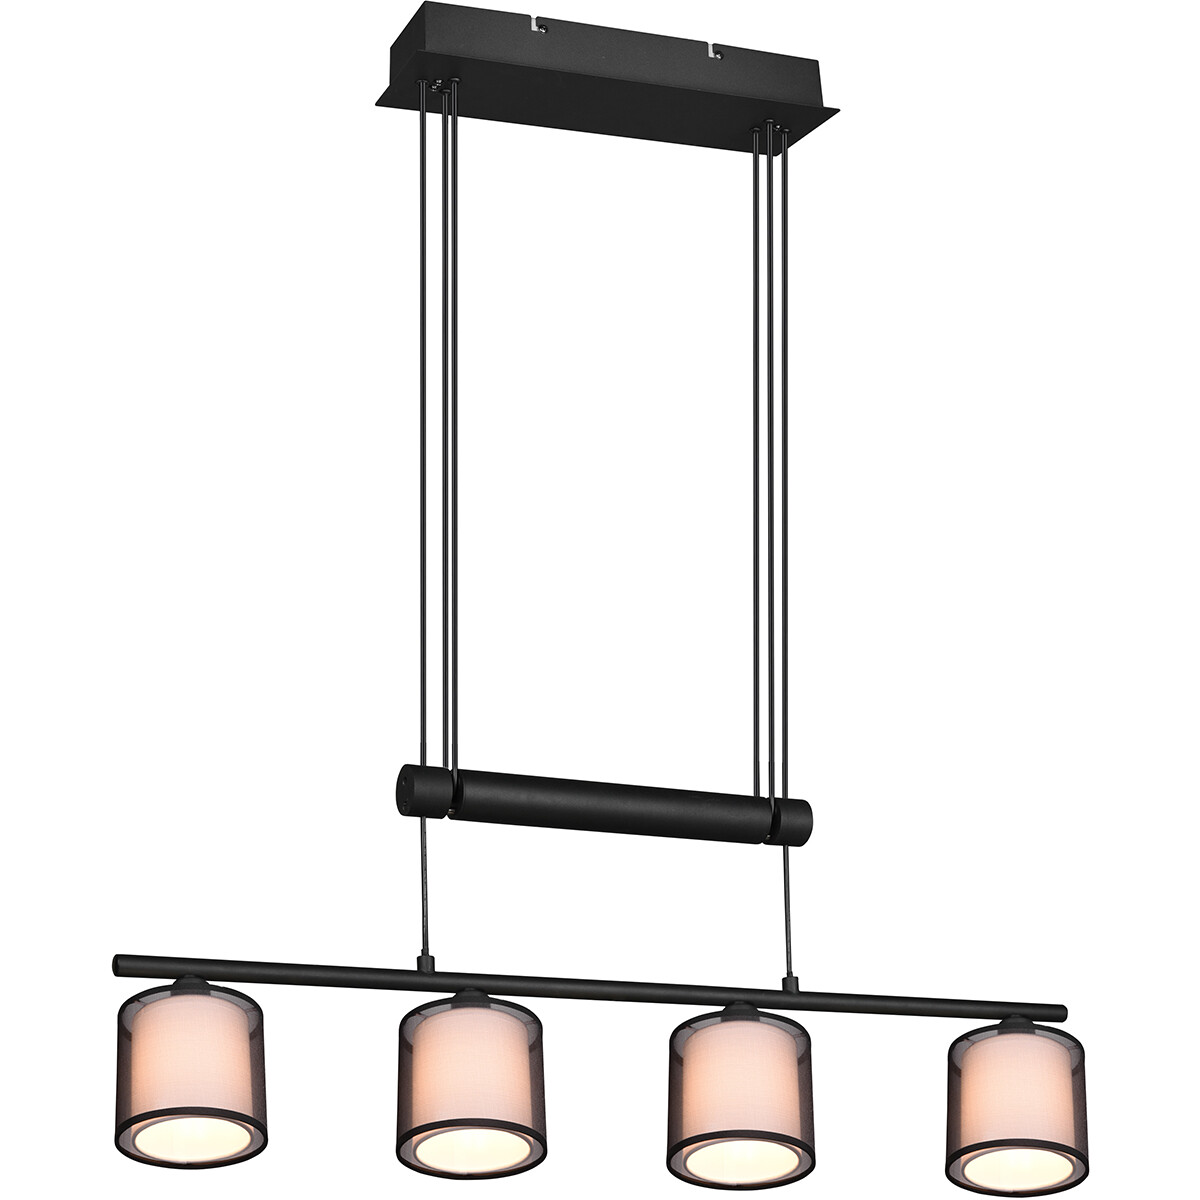 LED Hanglamp Hangverlichting Trion Bidon E27 Fitting 4-lichts Rechthoek Mat Zwart Aluminium